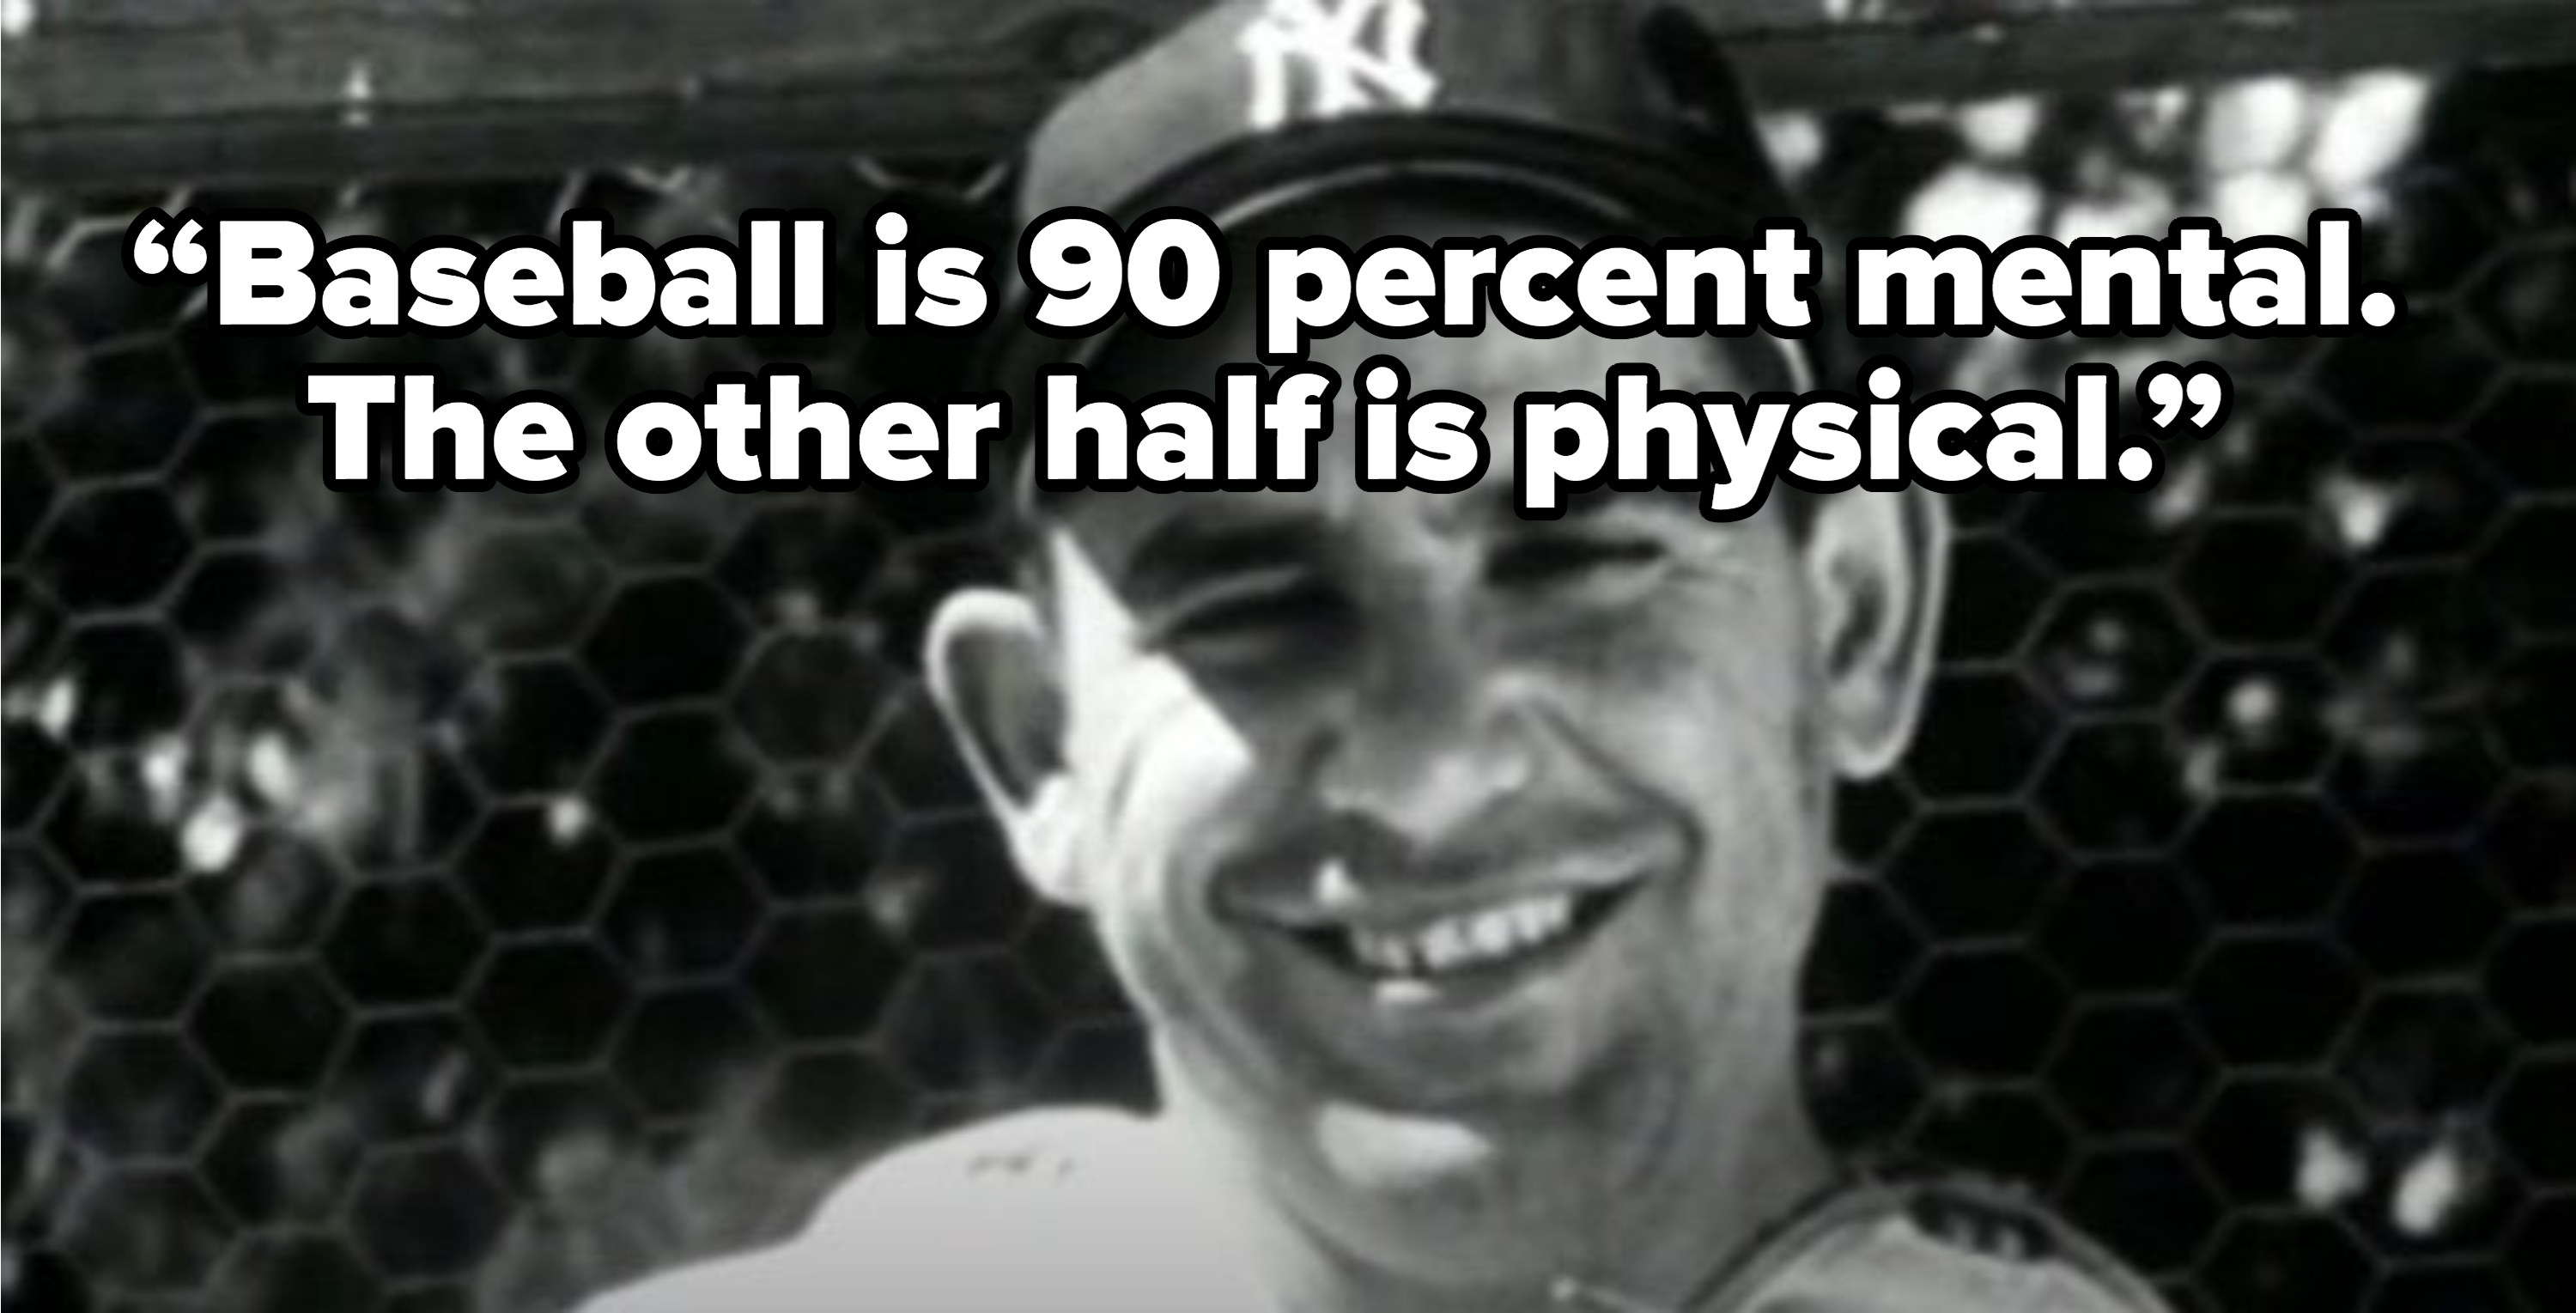 约吉贝拉的引用,“棒球是90%的精神。另一半是physical"